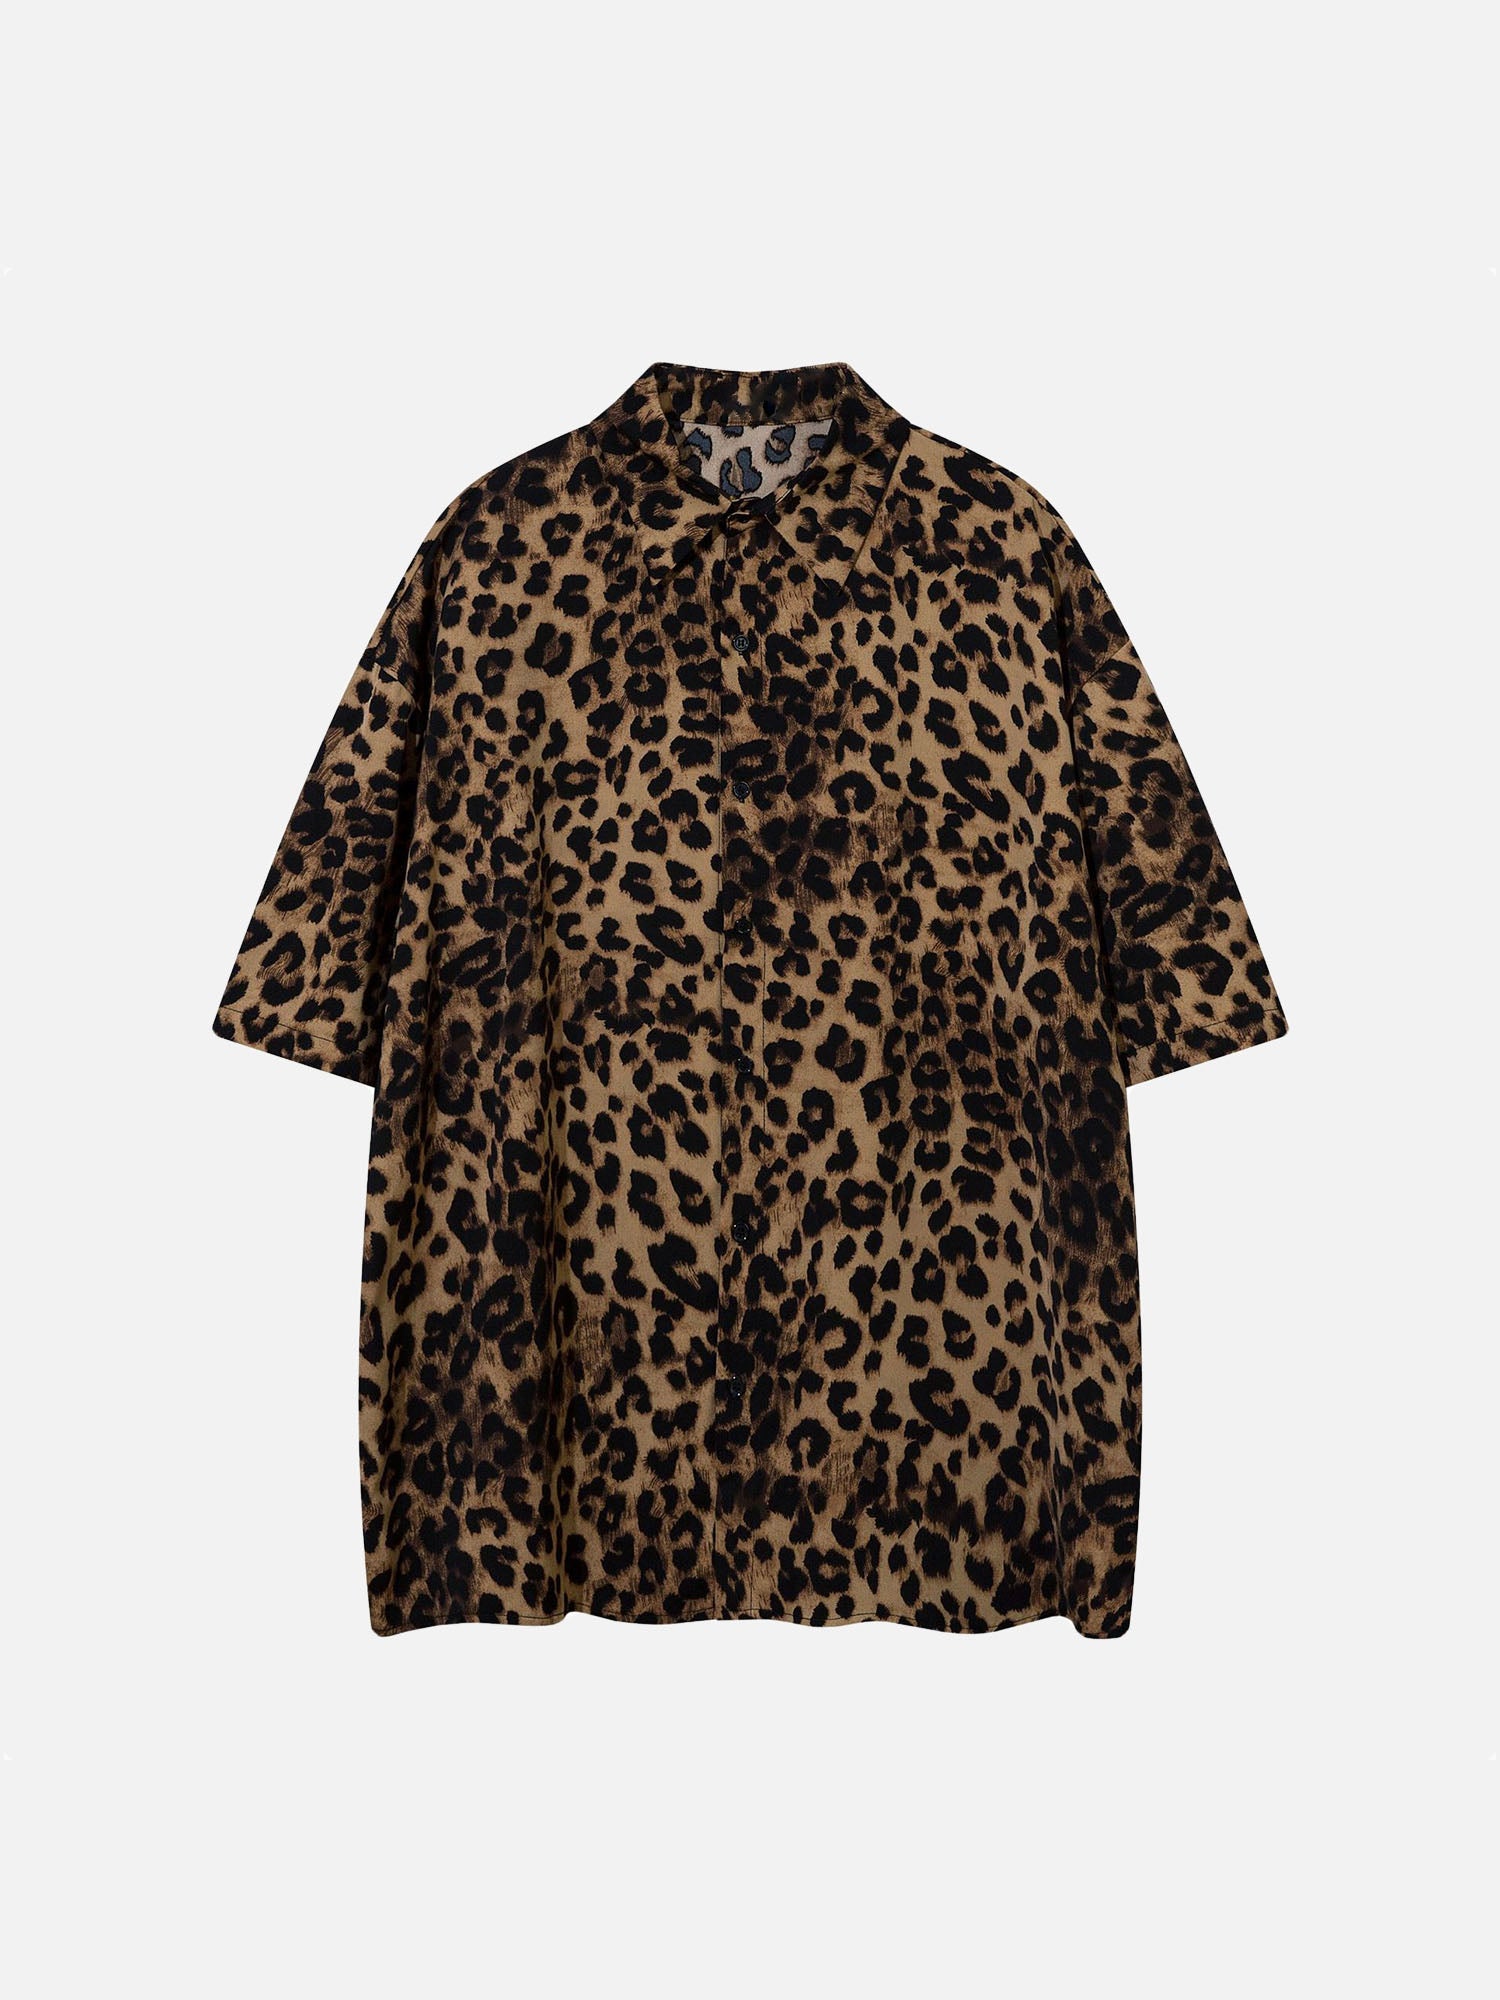 American Niche Design Leopard Print Shirt